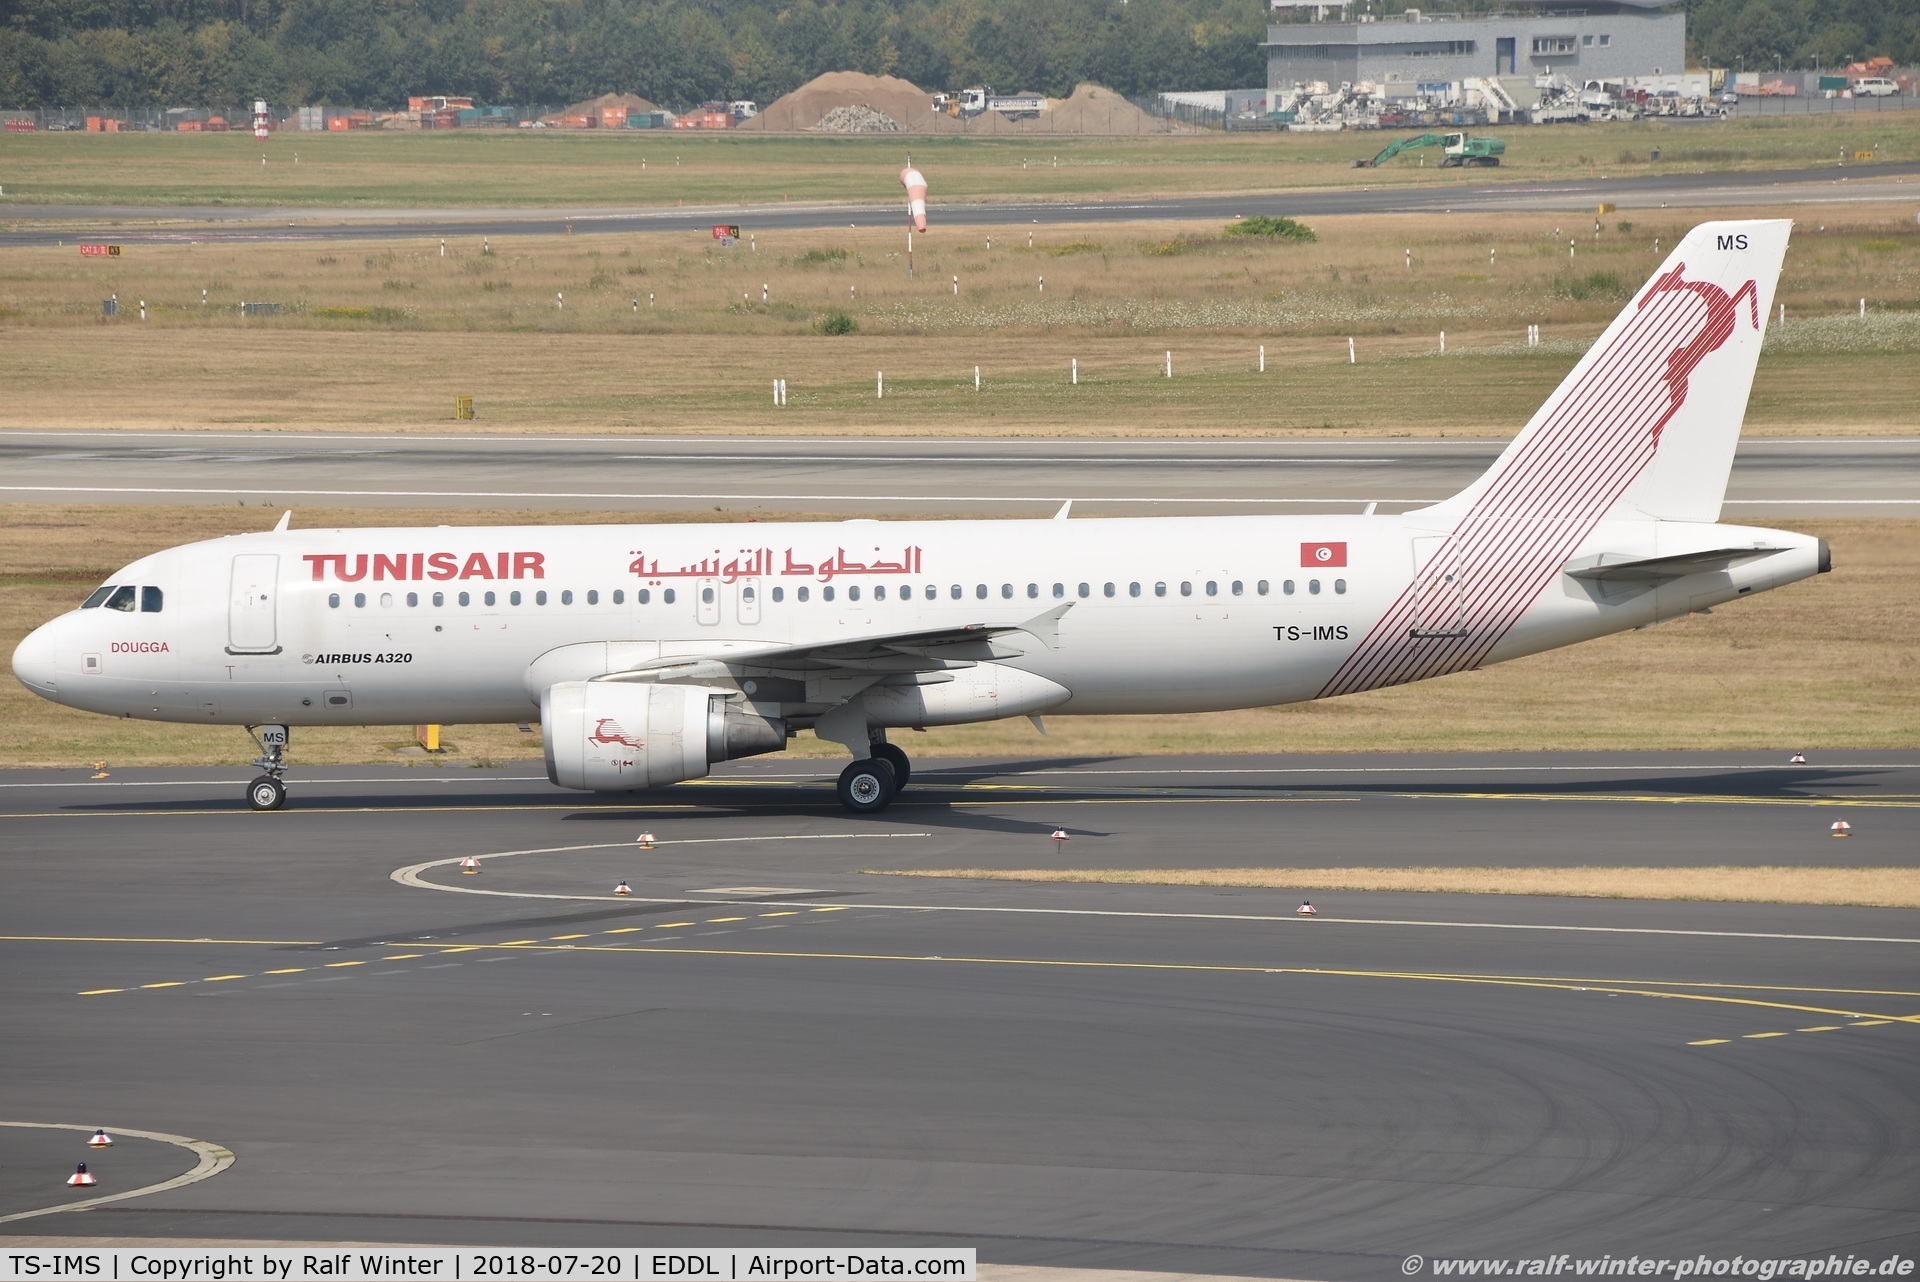 TS-IMS, 2011 Airbus A320-214 C/N 4689, Airbus A320-214 - TU TAR Tunisair 'Dougga' - 4689 - TS-IMS - 20.07.2018 - DUS